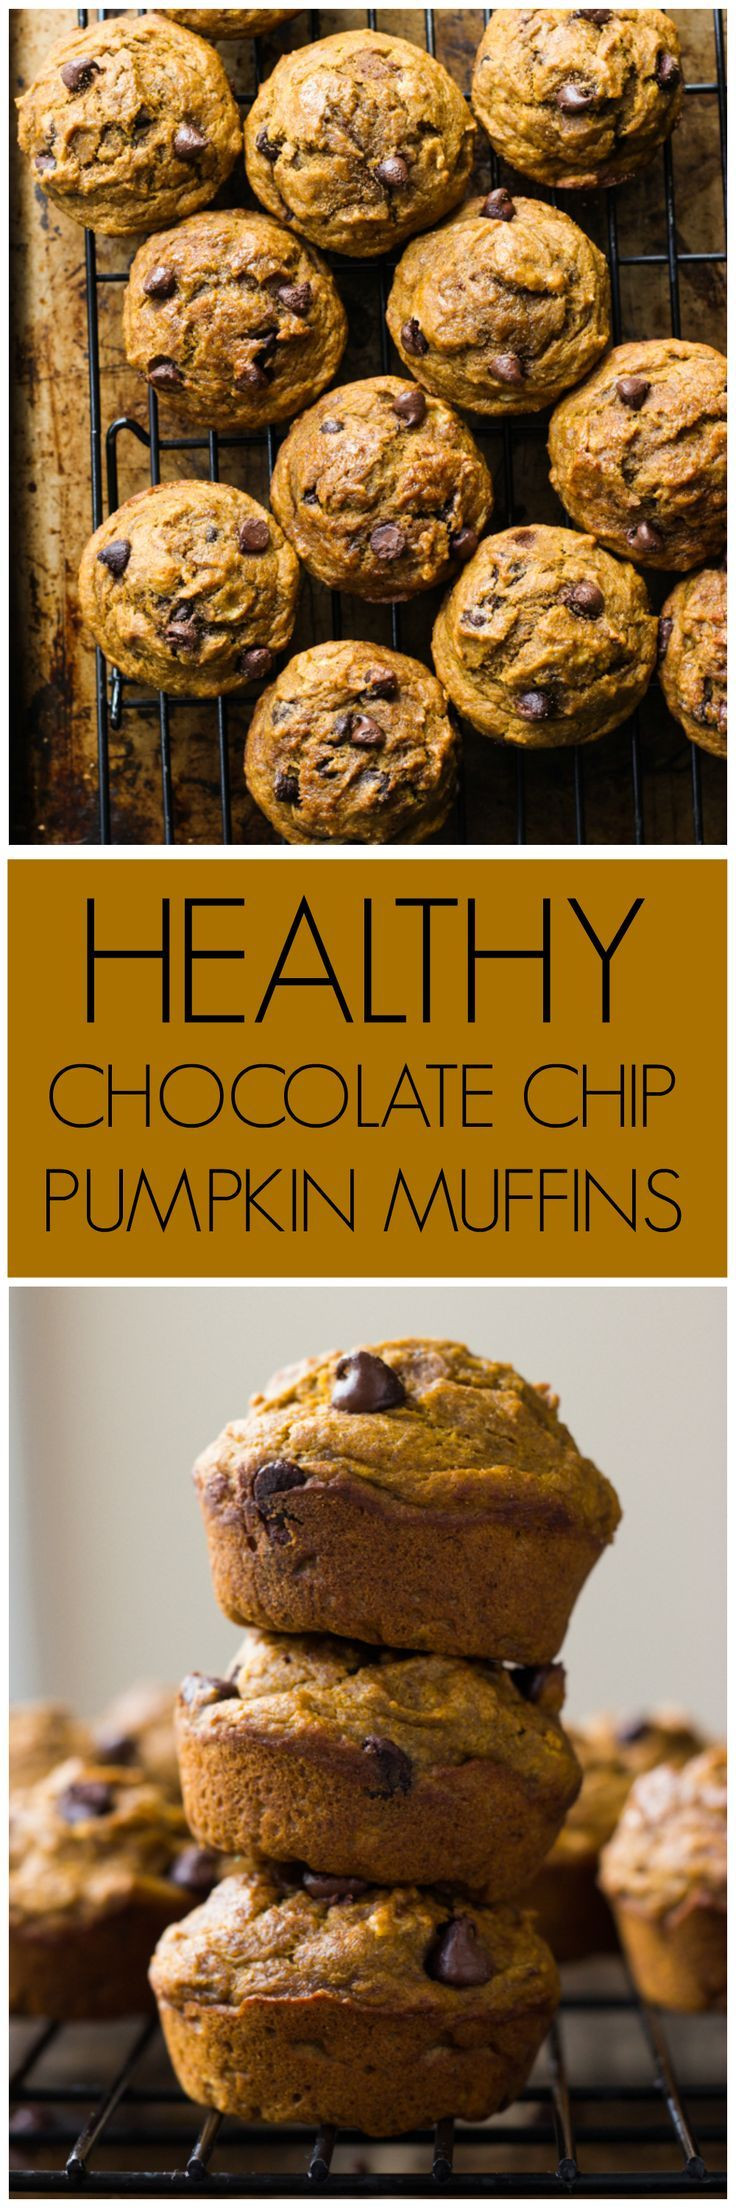 Weight Watchers Pumpkin Chocolate Chip Muffins
 Healthy Chocolate Chip Pumpkin Muffins Recipe